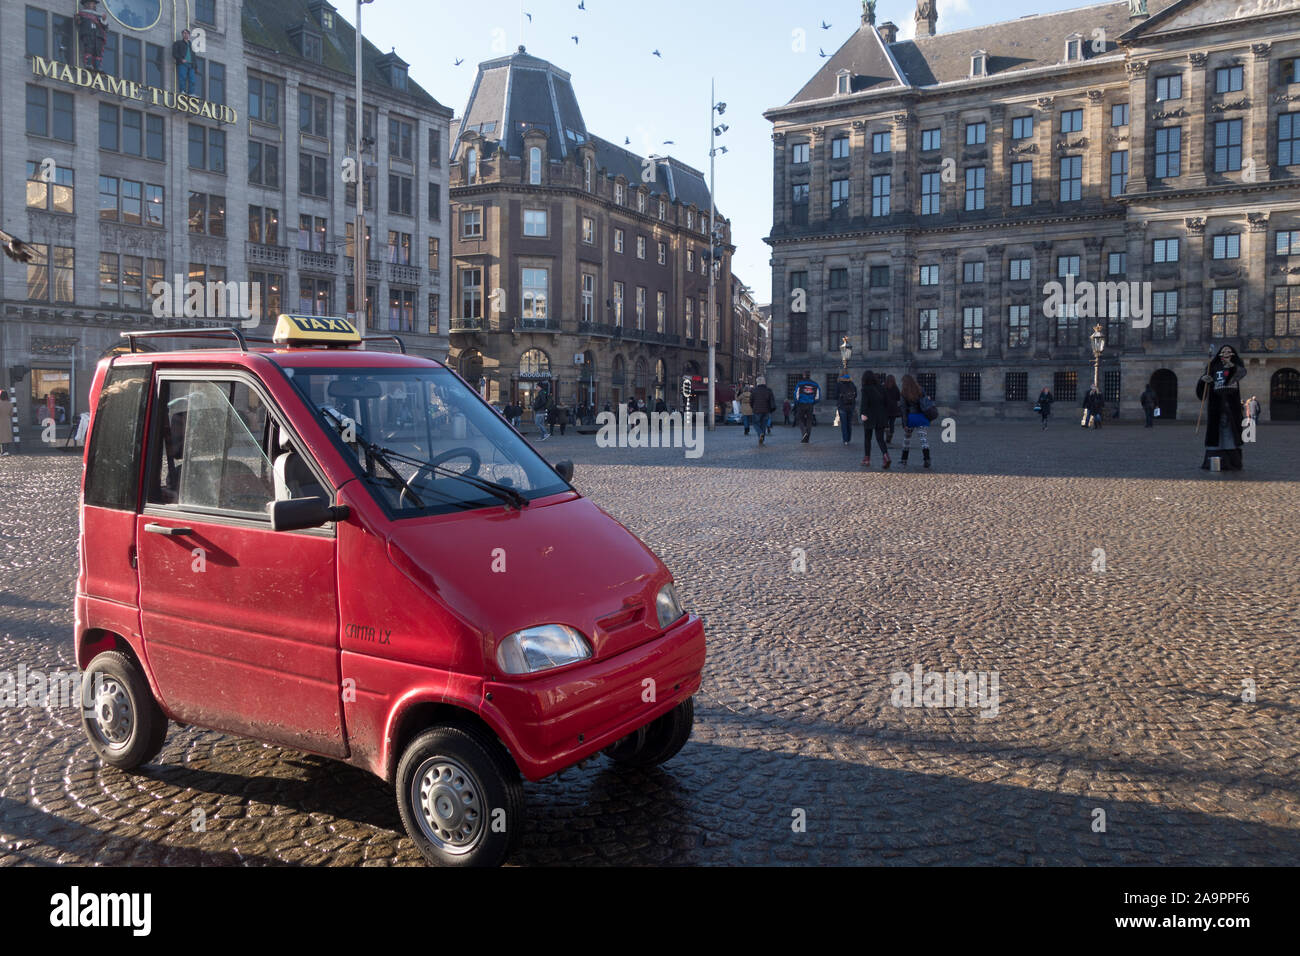 Canta mini taxi in Dam Square Amsterdam Stock Photo